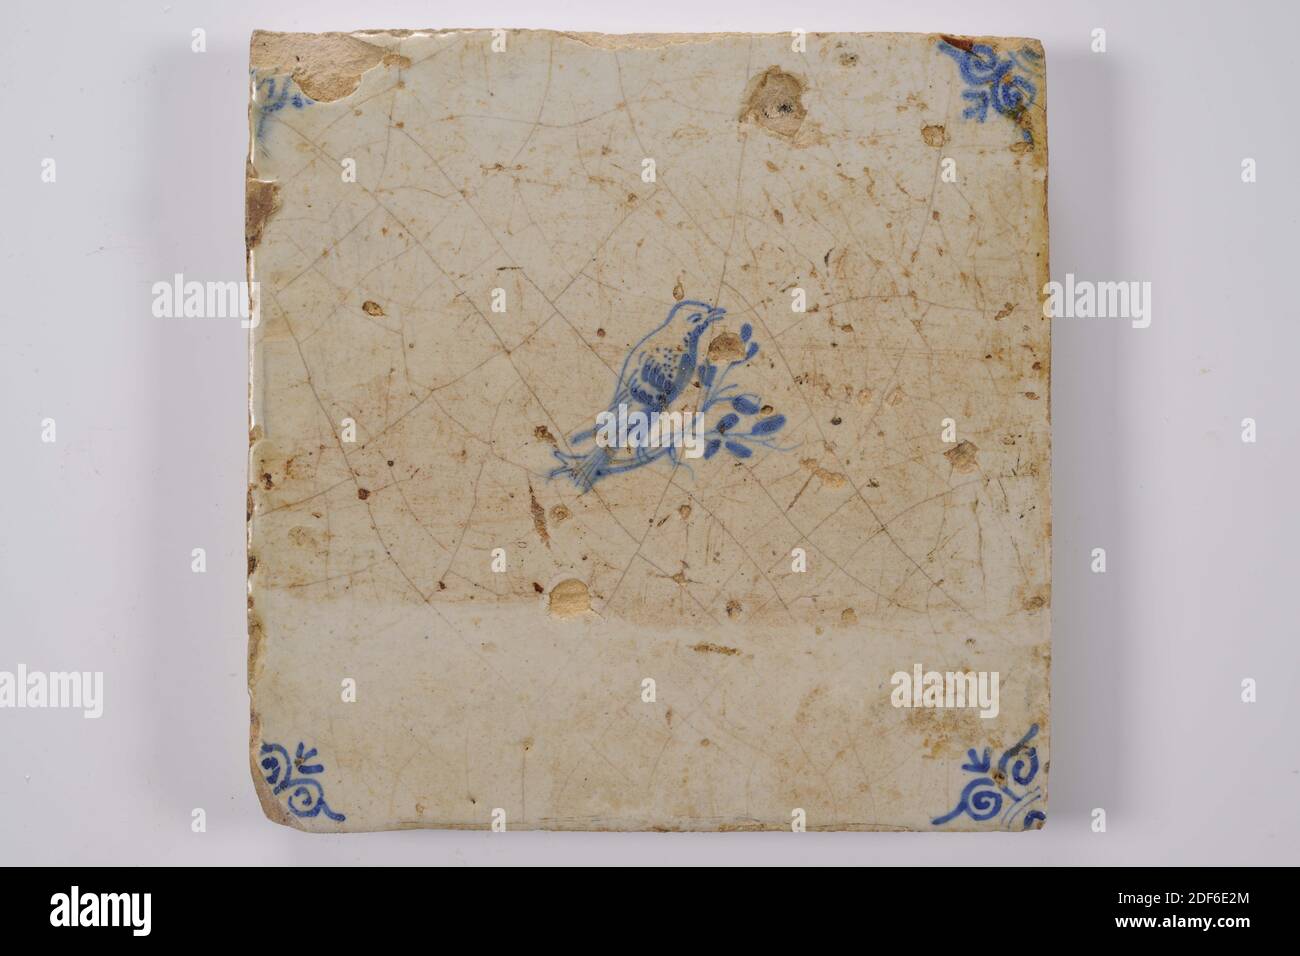 Carreau de mur, Anonyme, entre 1640-1700, glaçure d'étain, faïence, général: 13.5 x 13.5 x 1,2cm (135 x 135 x 12mm), oiseau, arbre, carreau de mur de faïence recouvert de glaçure d'étain et peint en bleu. La tuile représente un oiseau orienté vers la droite sur une branche avec des feuilles. La tuile a une tête de boeuf comme un motif de coin, 1995 Banque D'Images